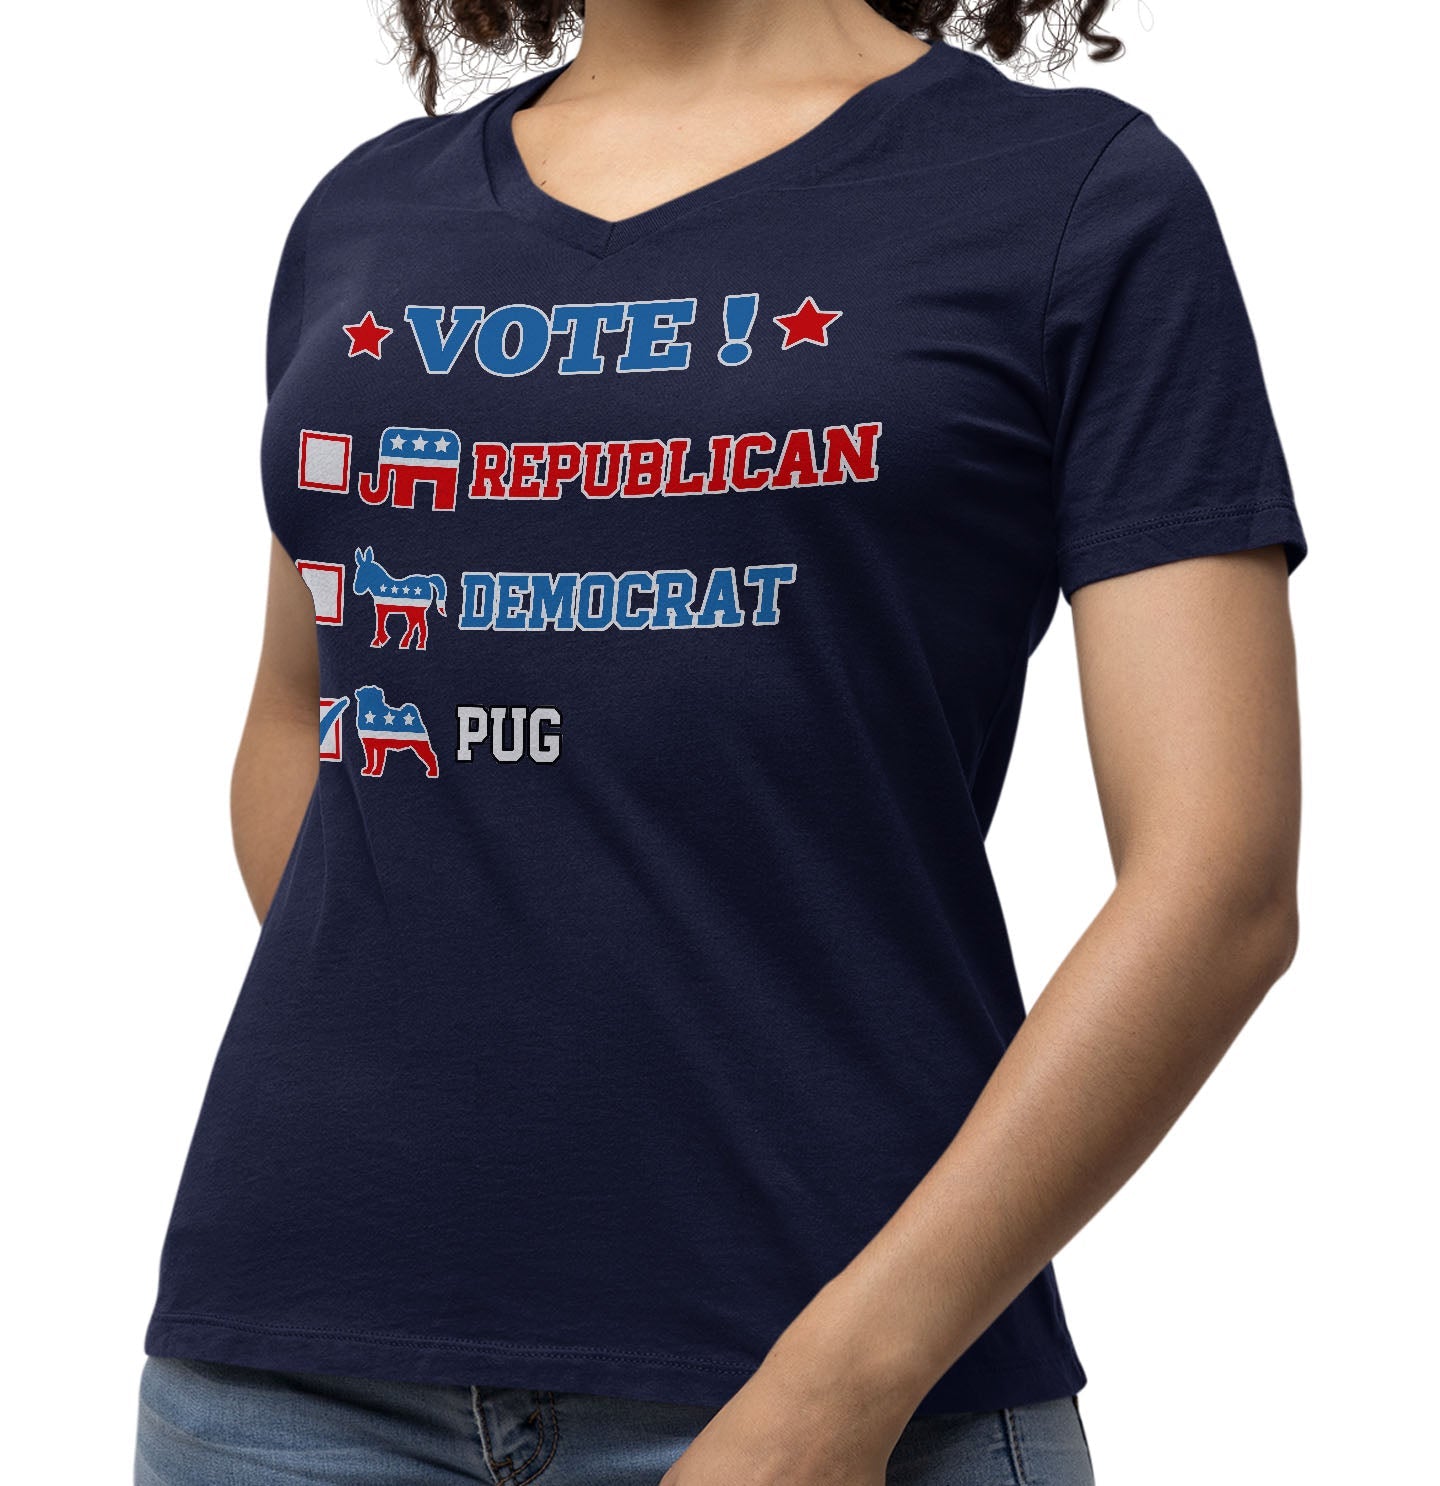 Vote for the Pug - Women's V-Neck T-Shirt